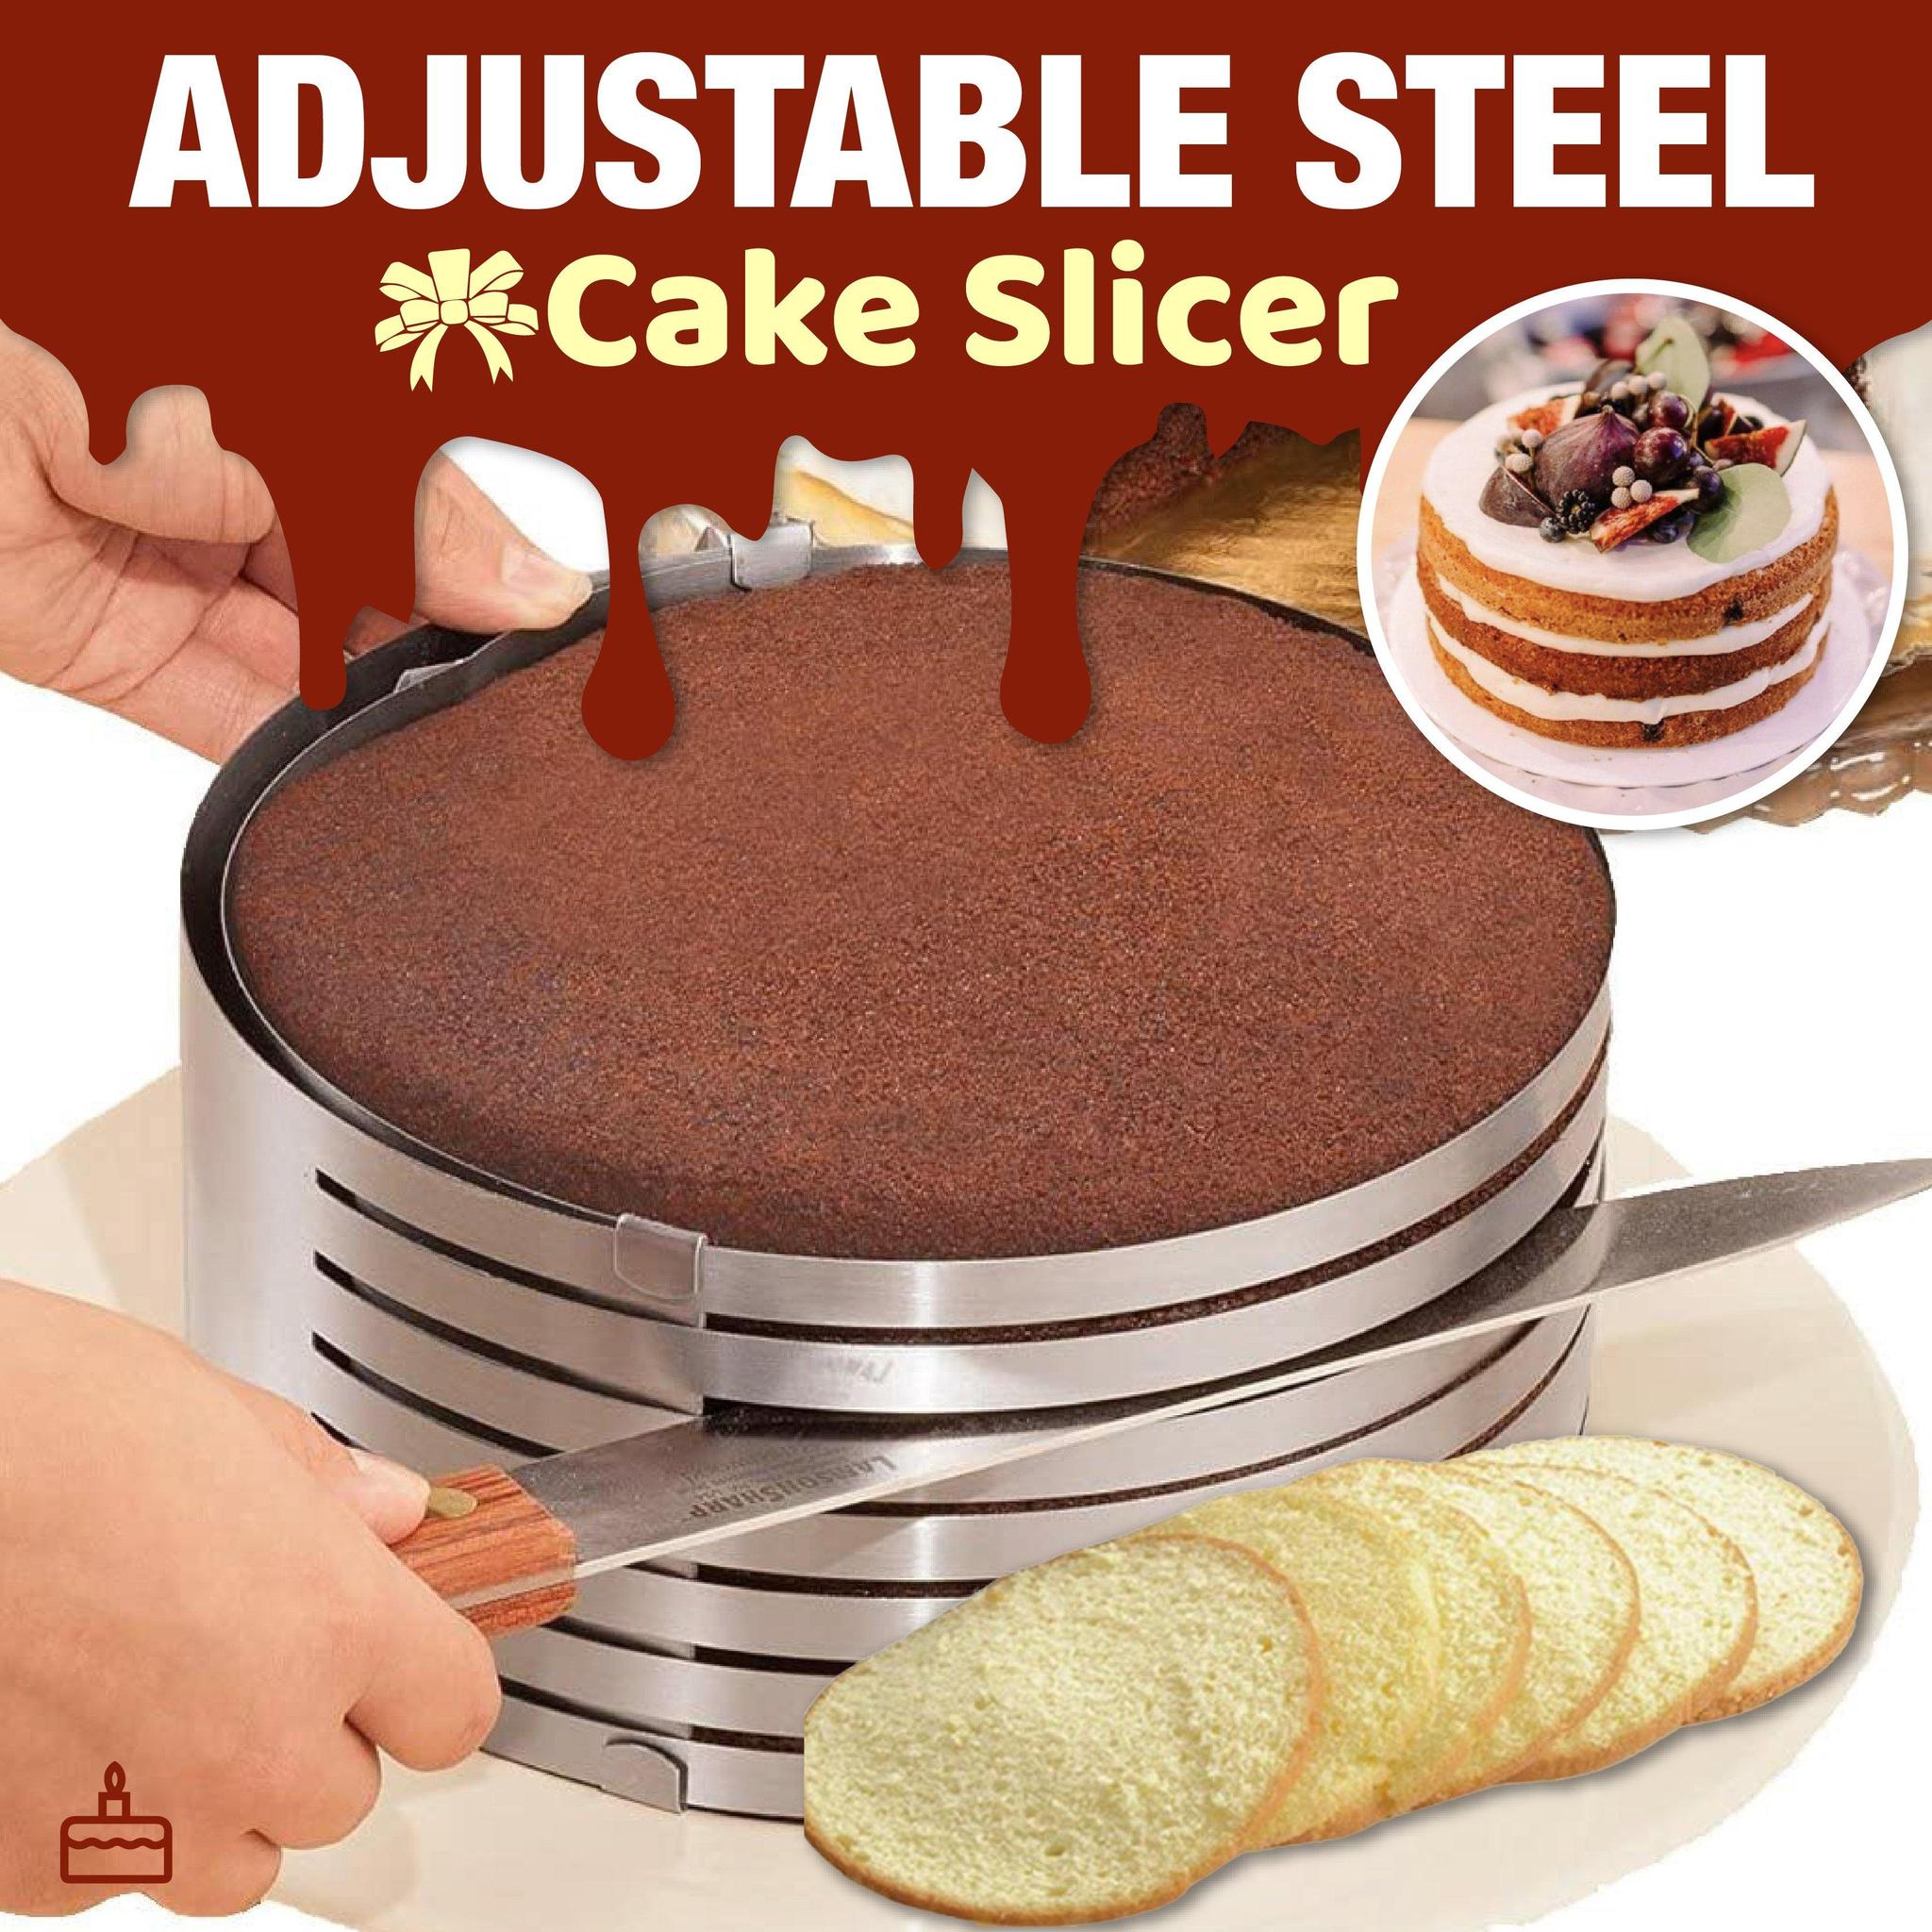 Adjustable Steel Cake Slicer